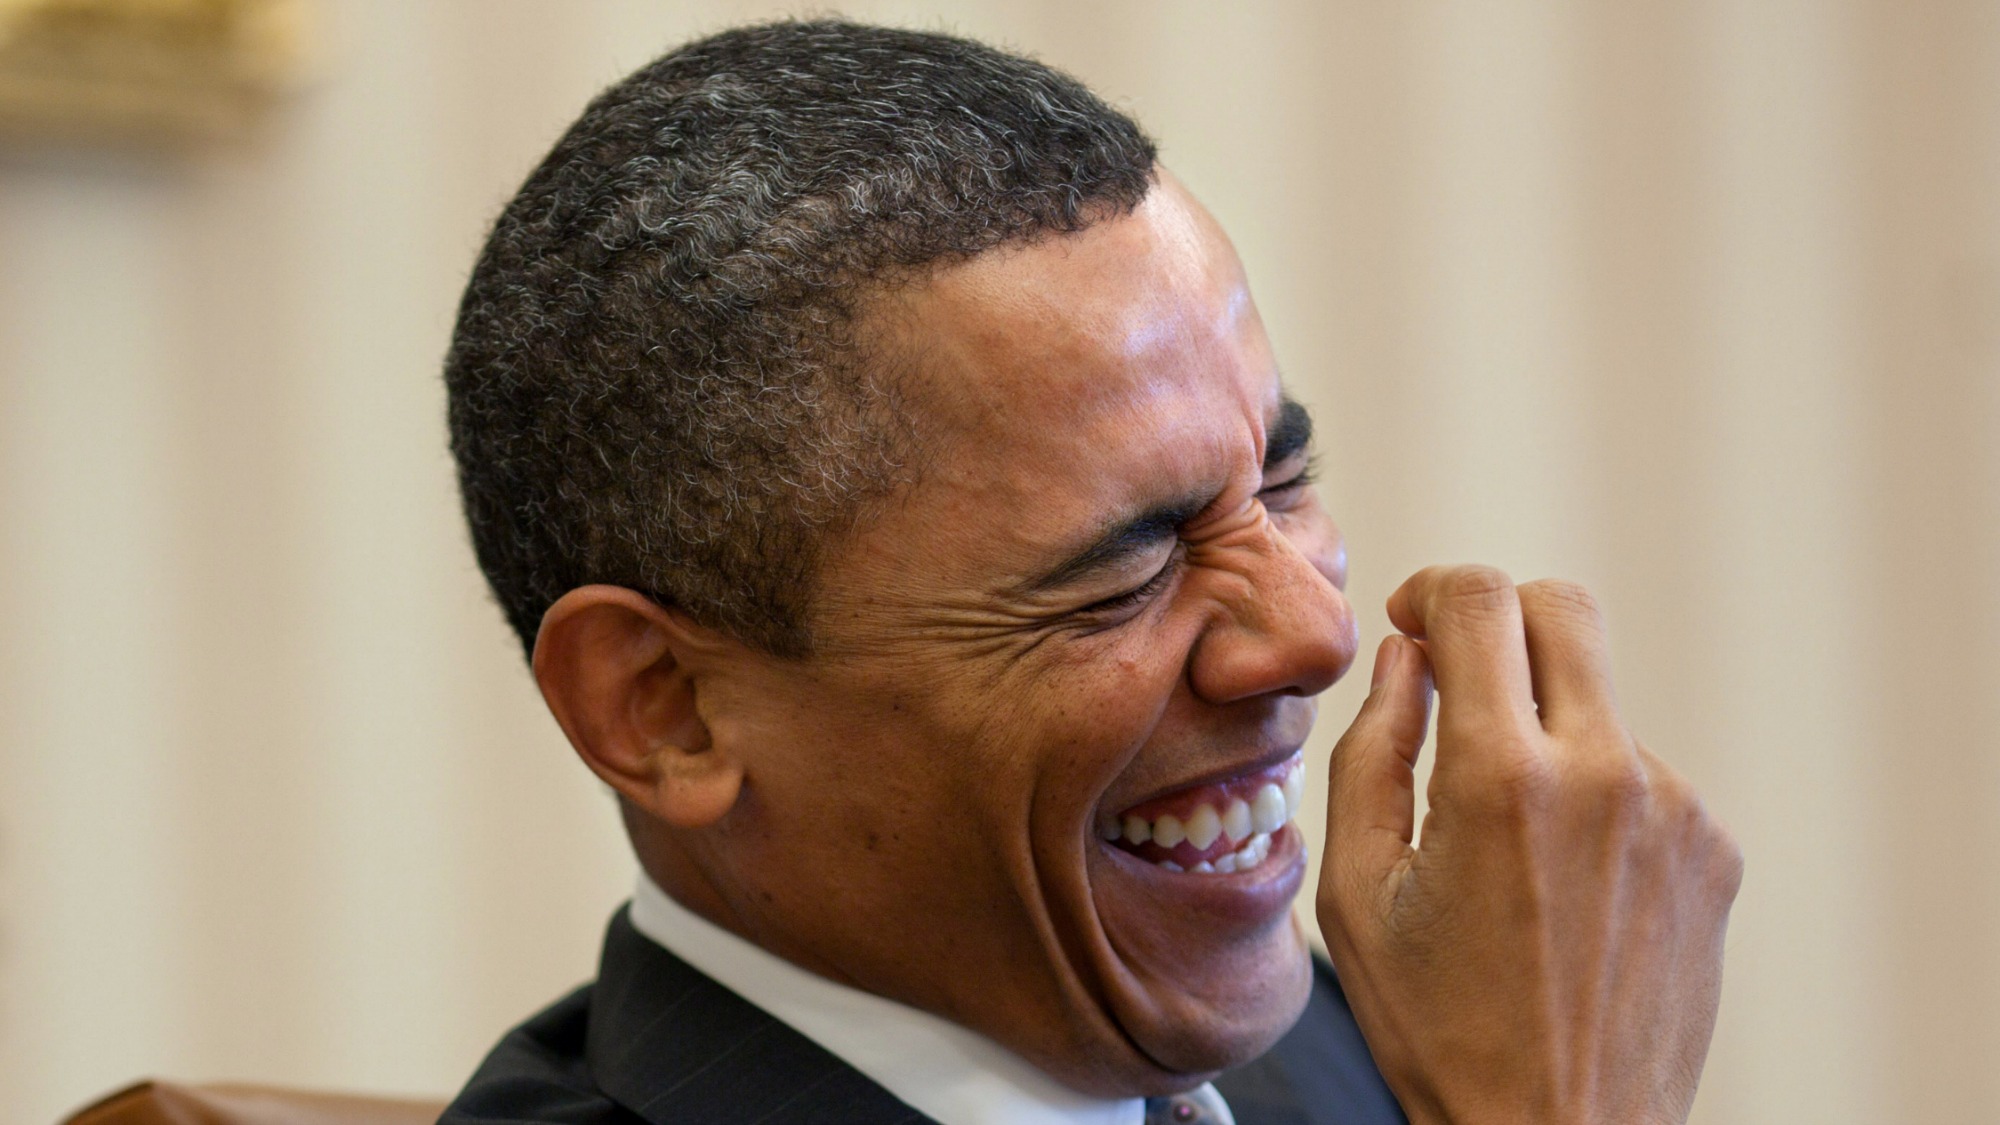 Obama laughs